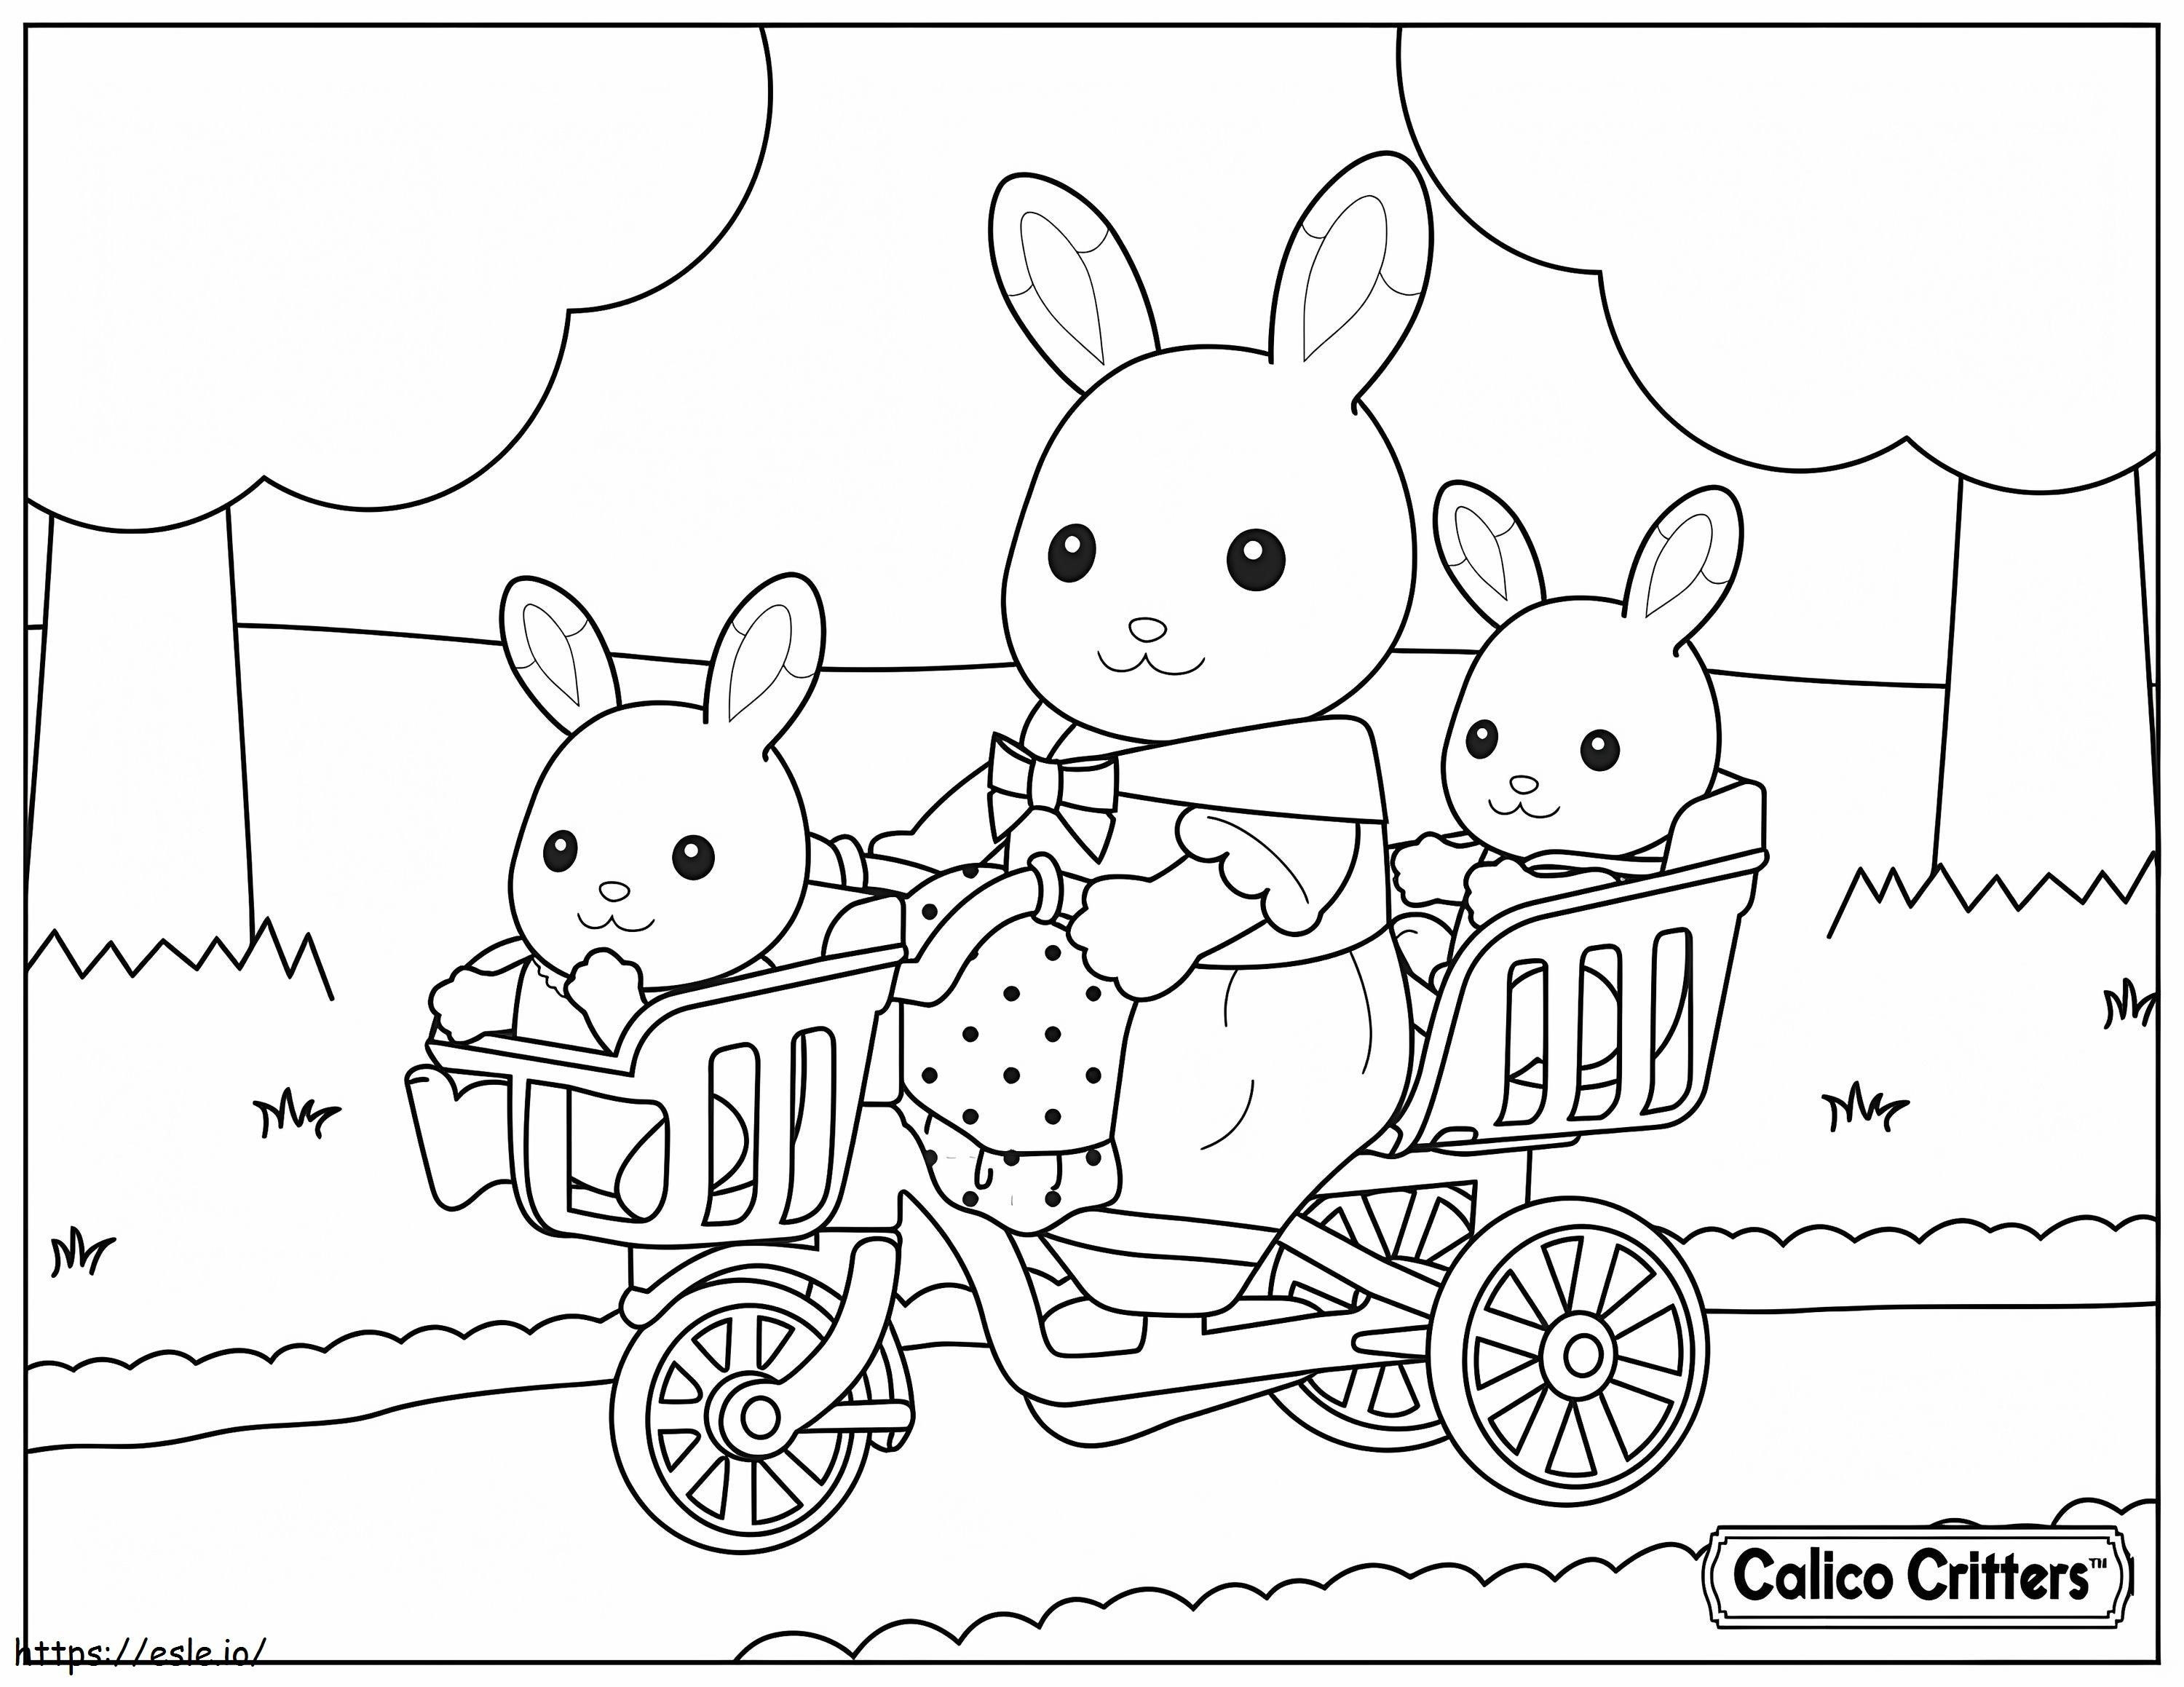  1515174989Calico Critters Dengan Sepeda Bayi Gambar Mewarnai